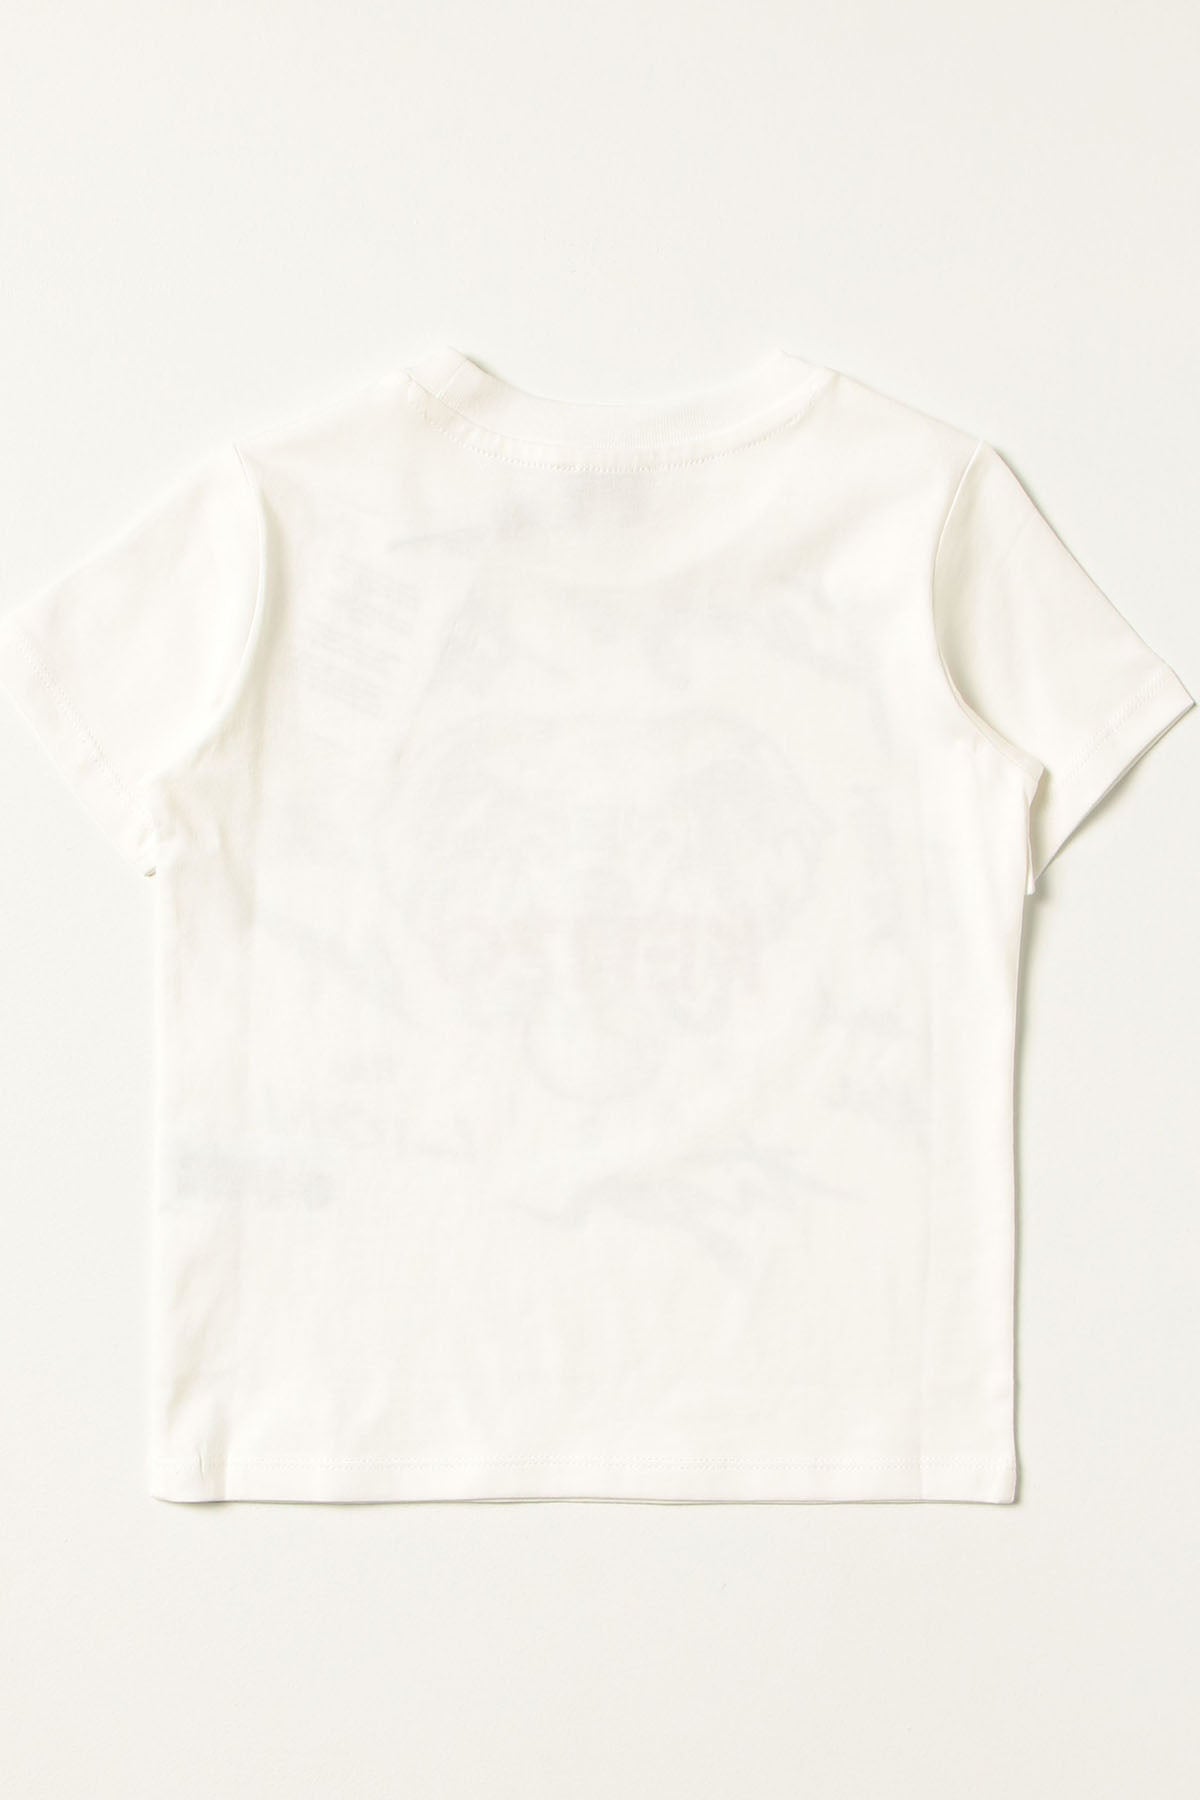 Kenzo Kids 3-5 Yaş Erkek Çocuk Fil Logolu T-shirt-Libas Trendy Fashion Store